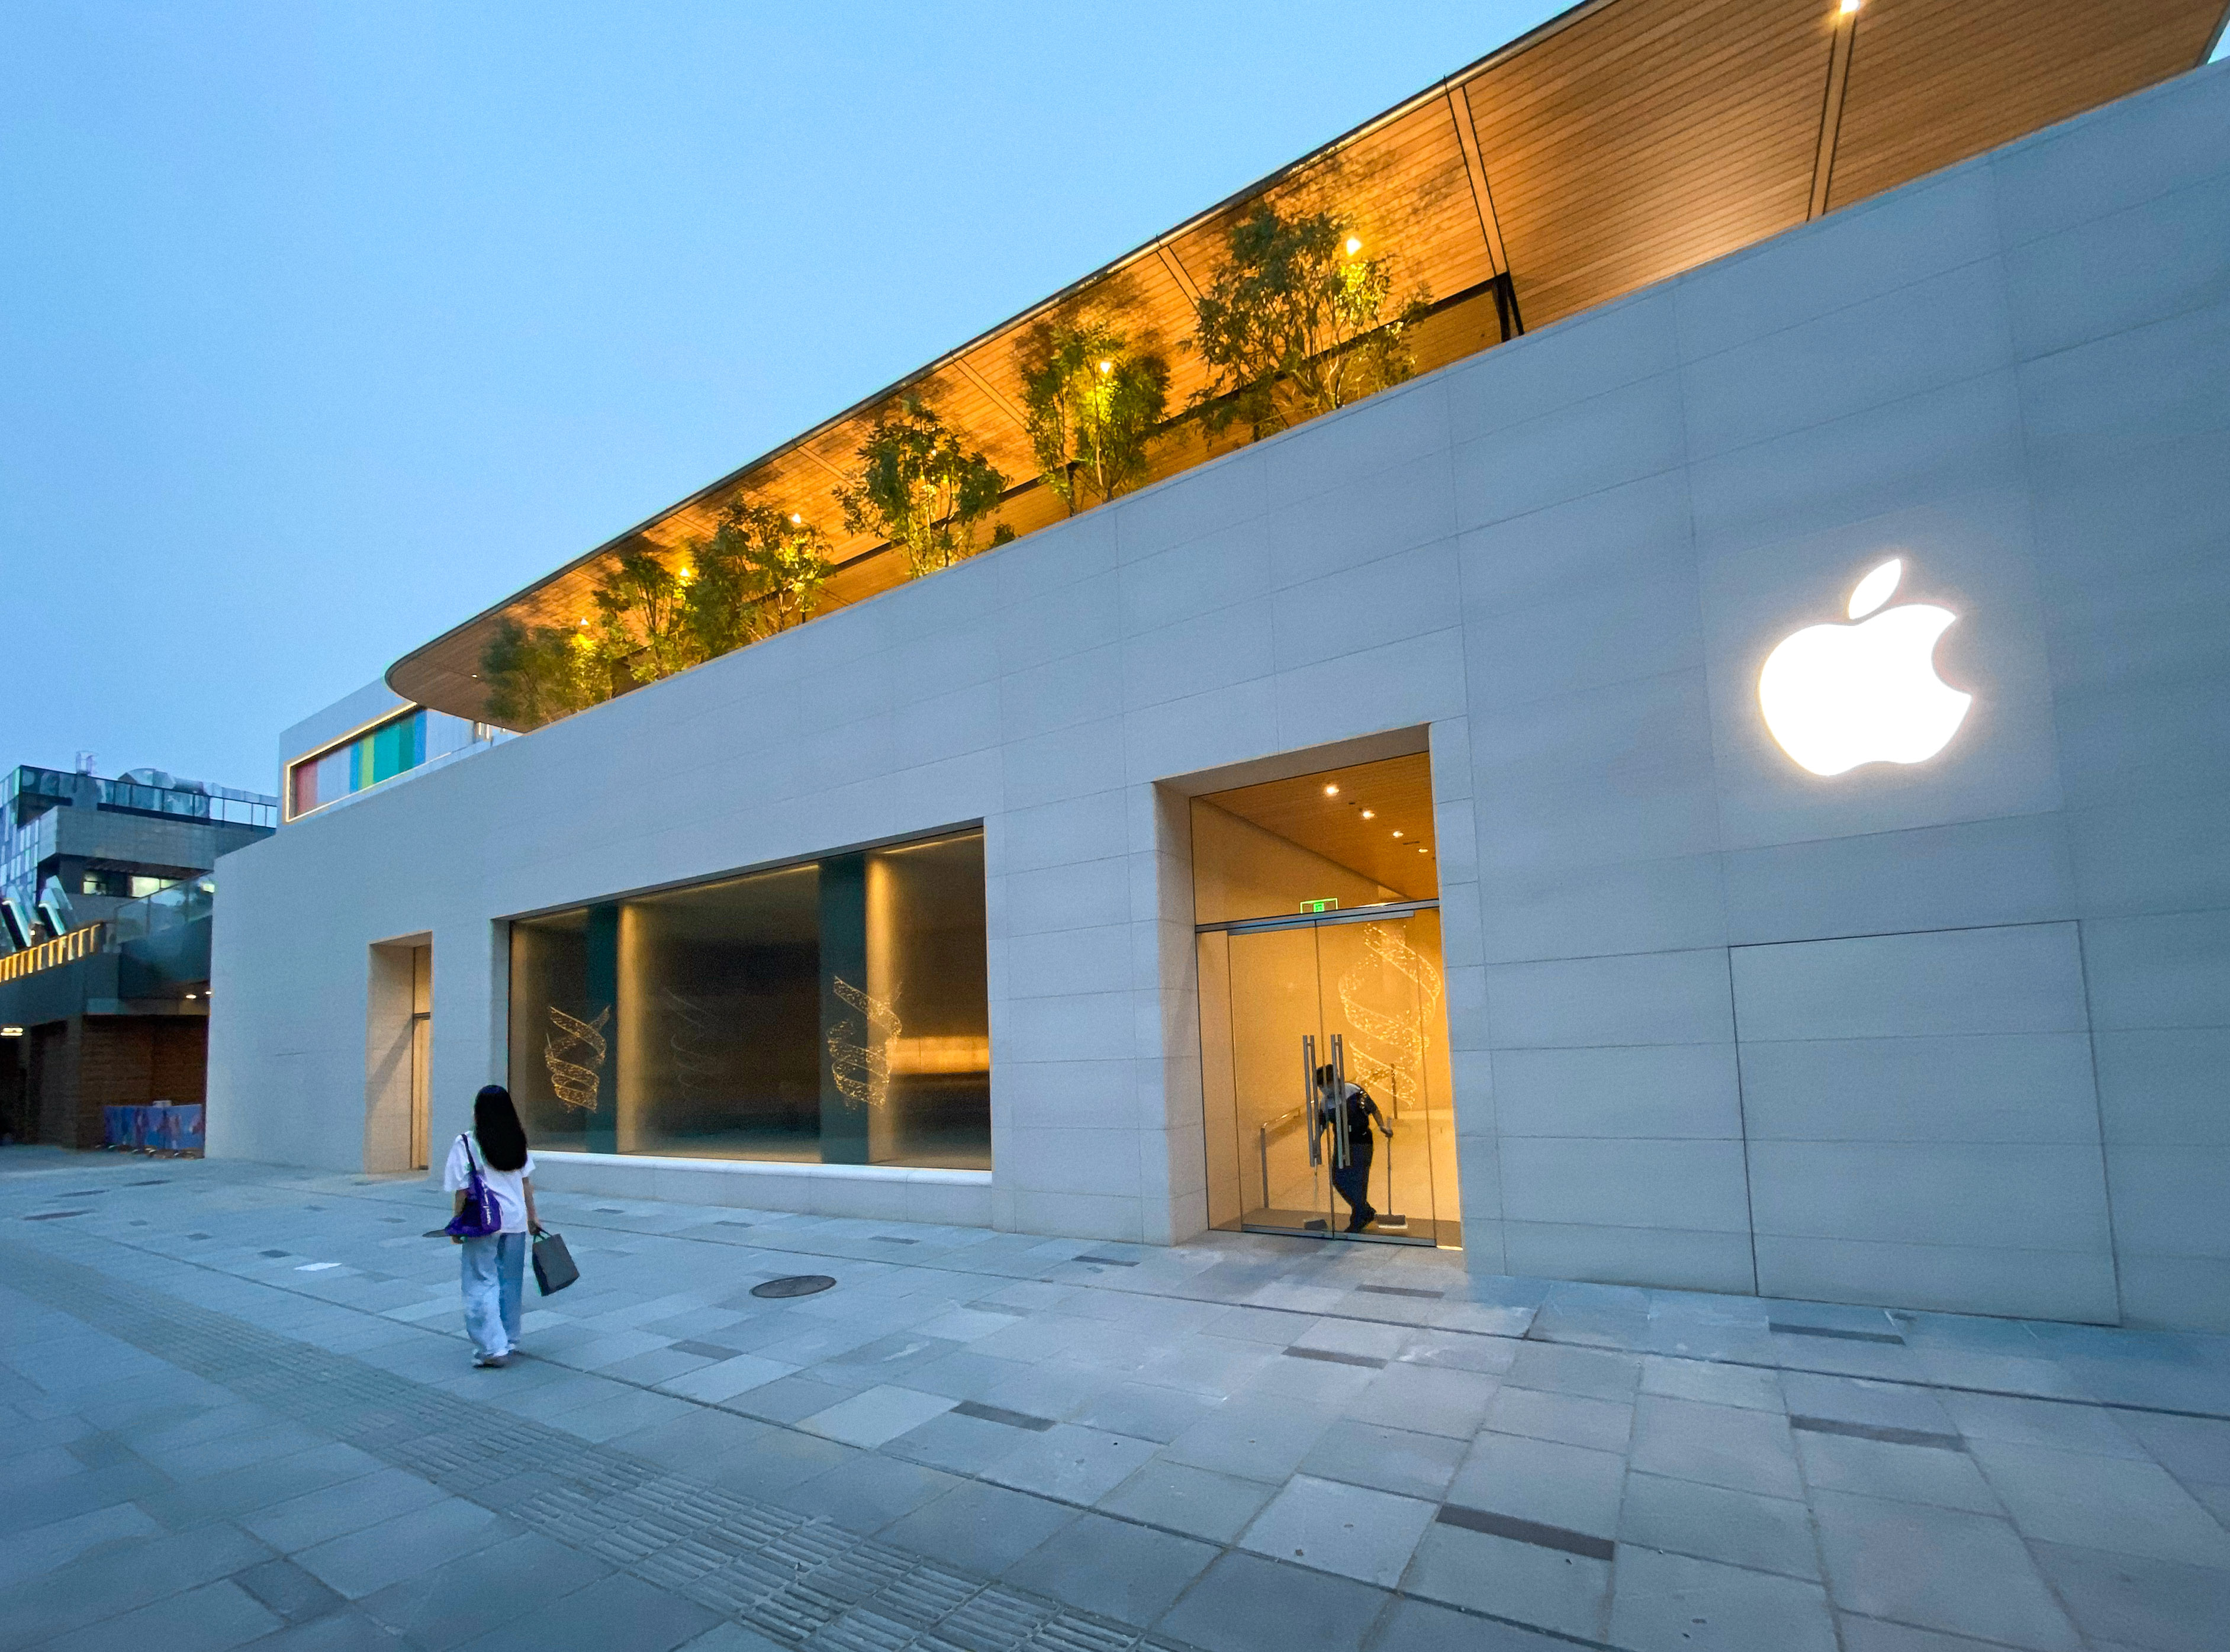 รูปภาพของผู้อ่าน Apple Sanlitun ใหม่รวบรวมสถาปัตยกรรม Apple Store ที่ดีที่สุด 5920